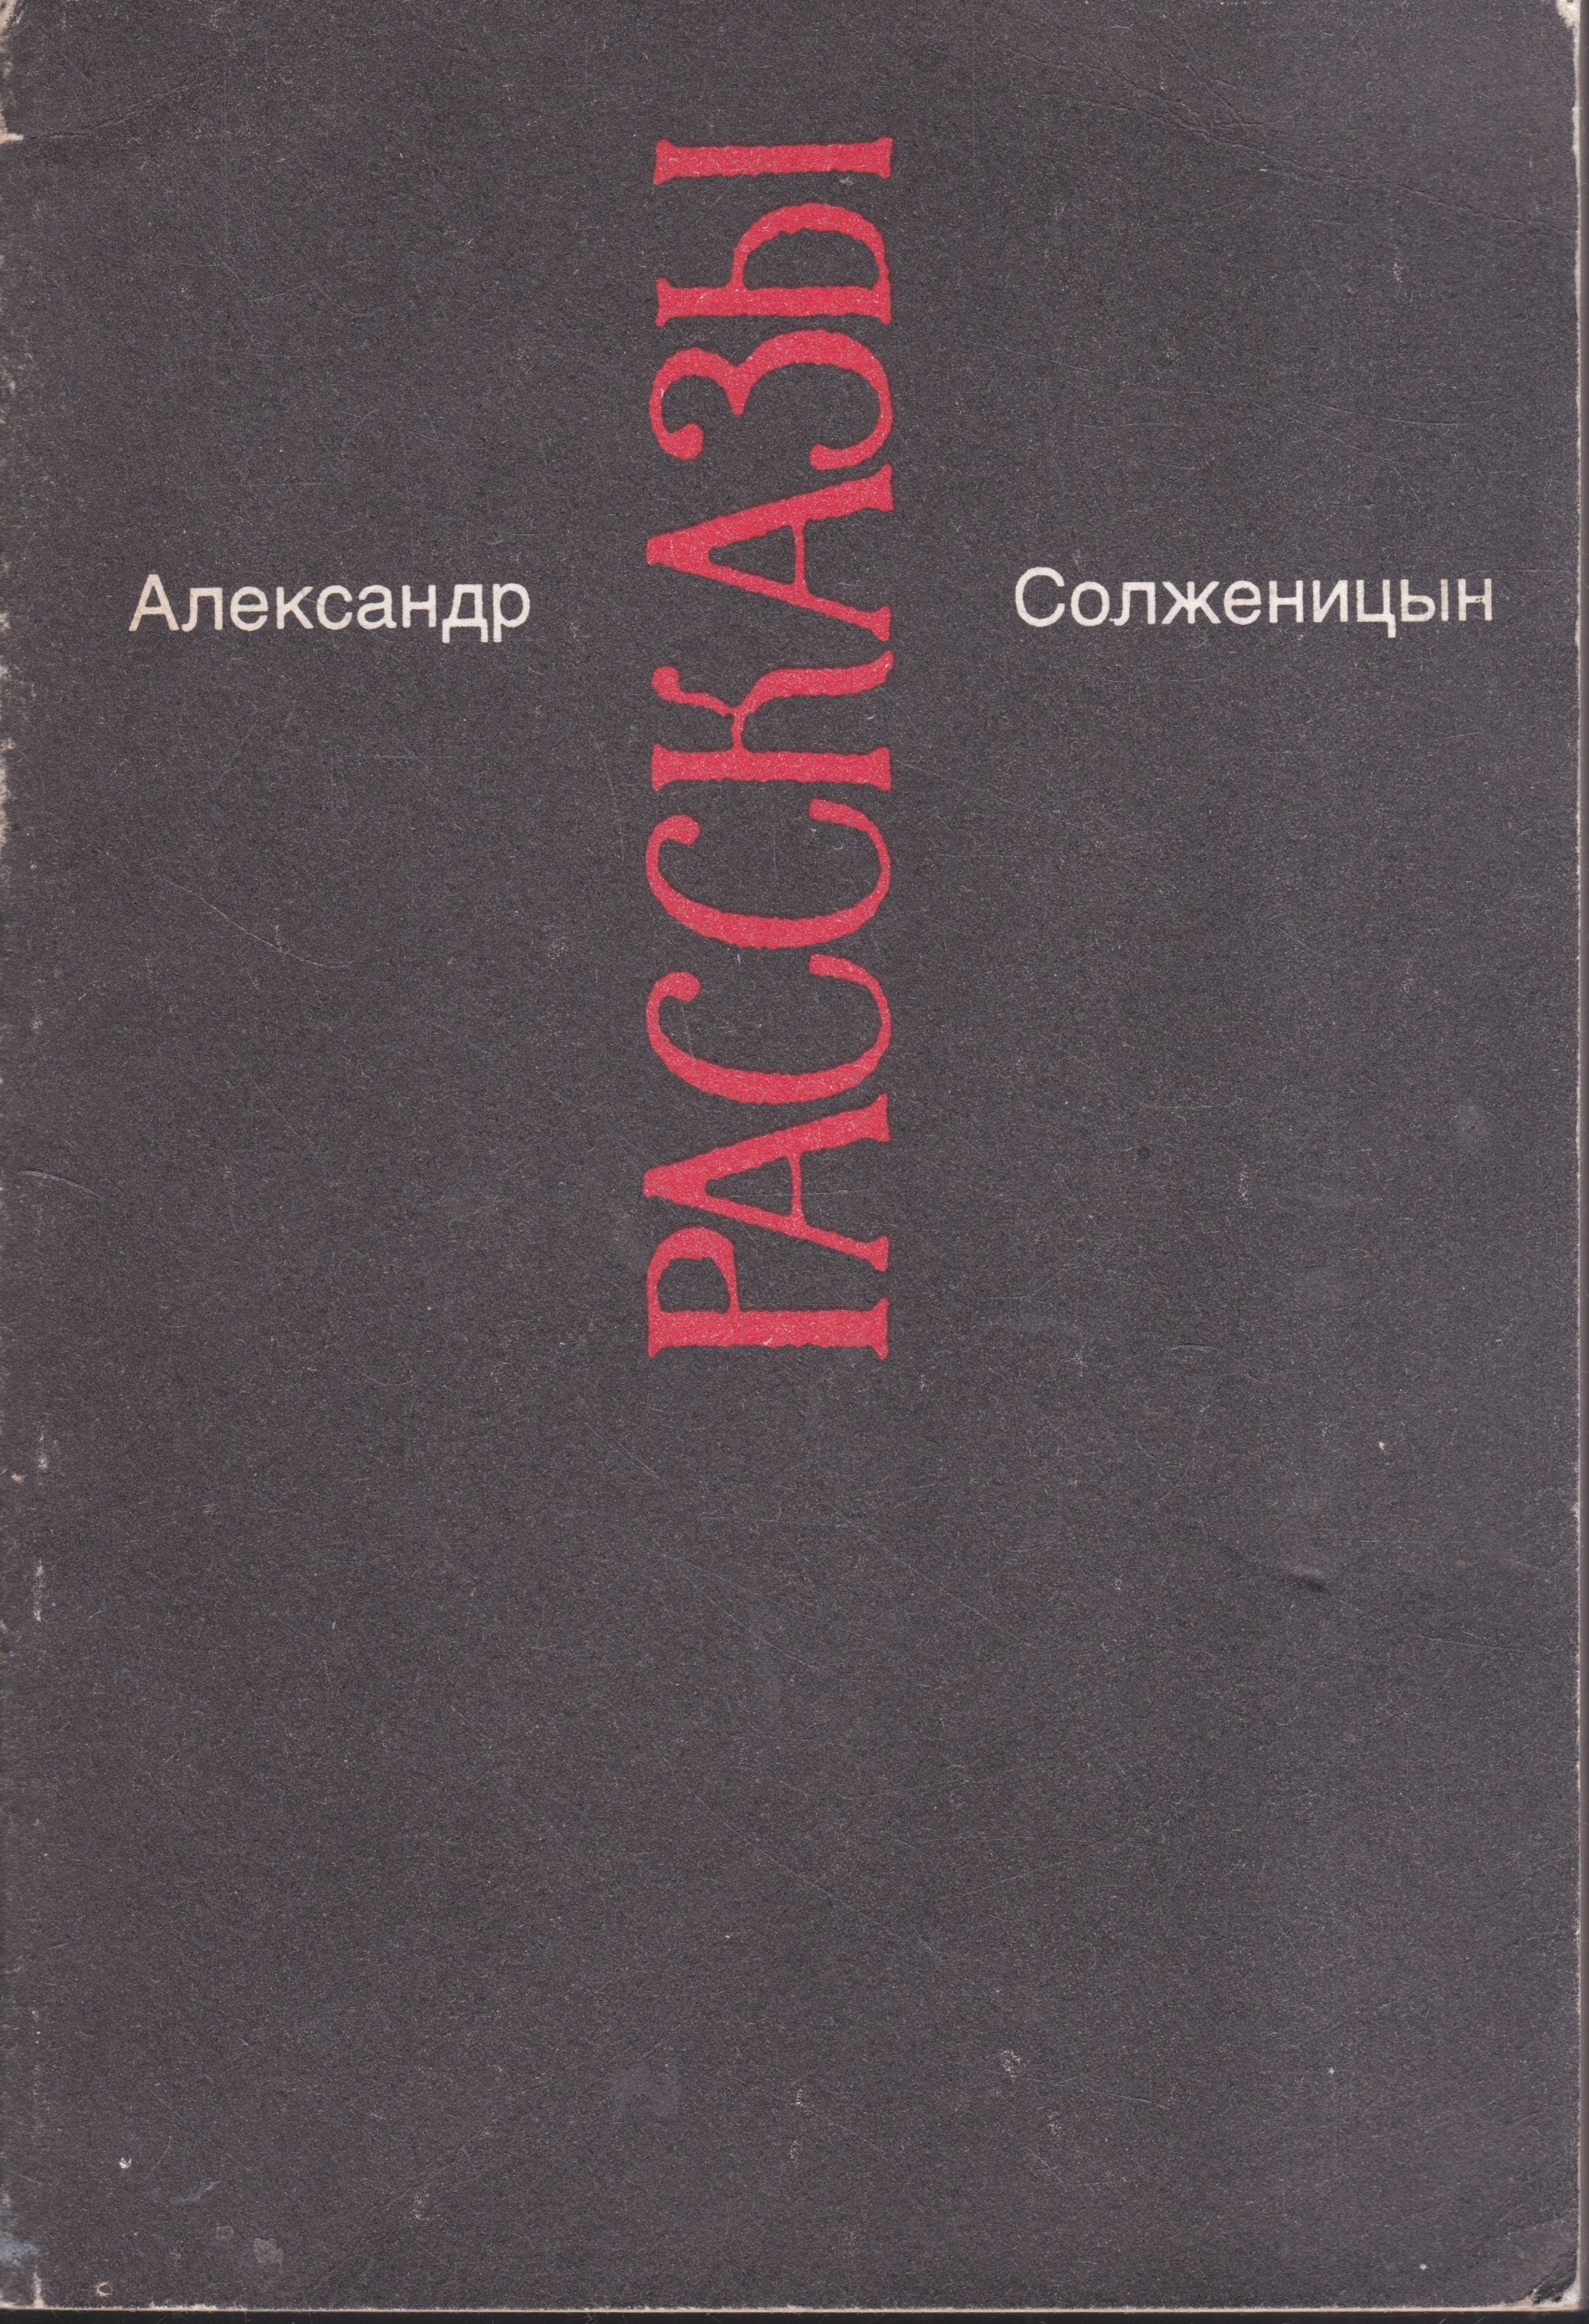 Самые известные произведения солженицына. Солженицын сборник рассказов.